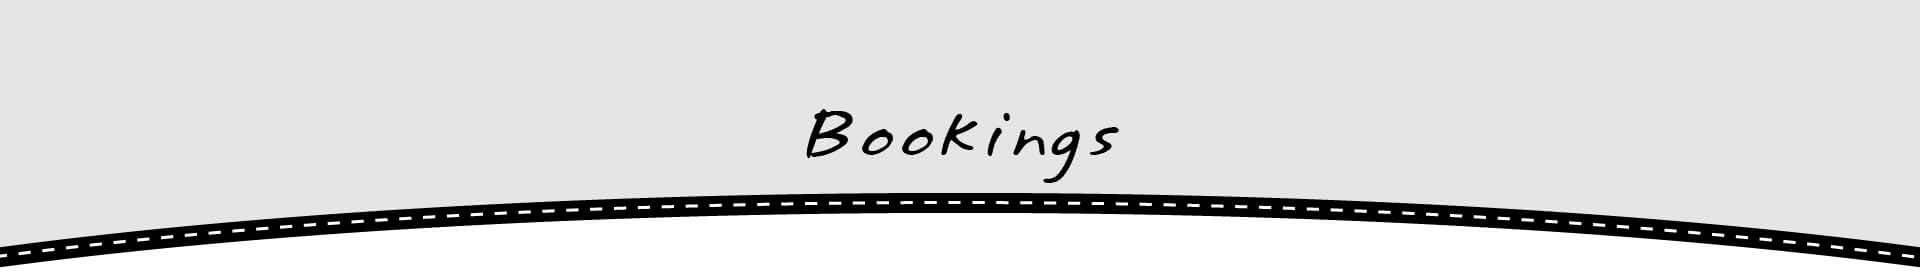 bookings